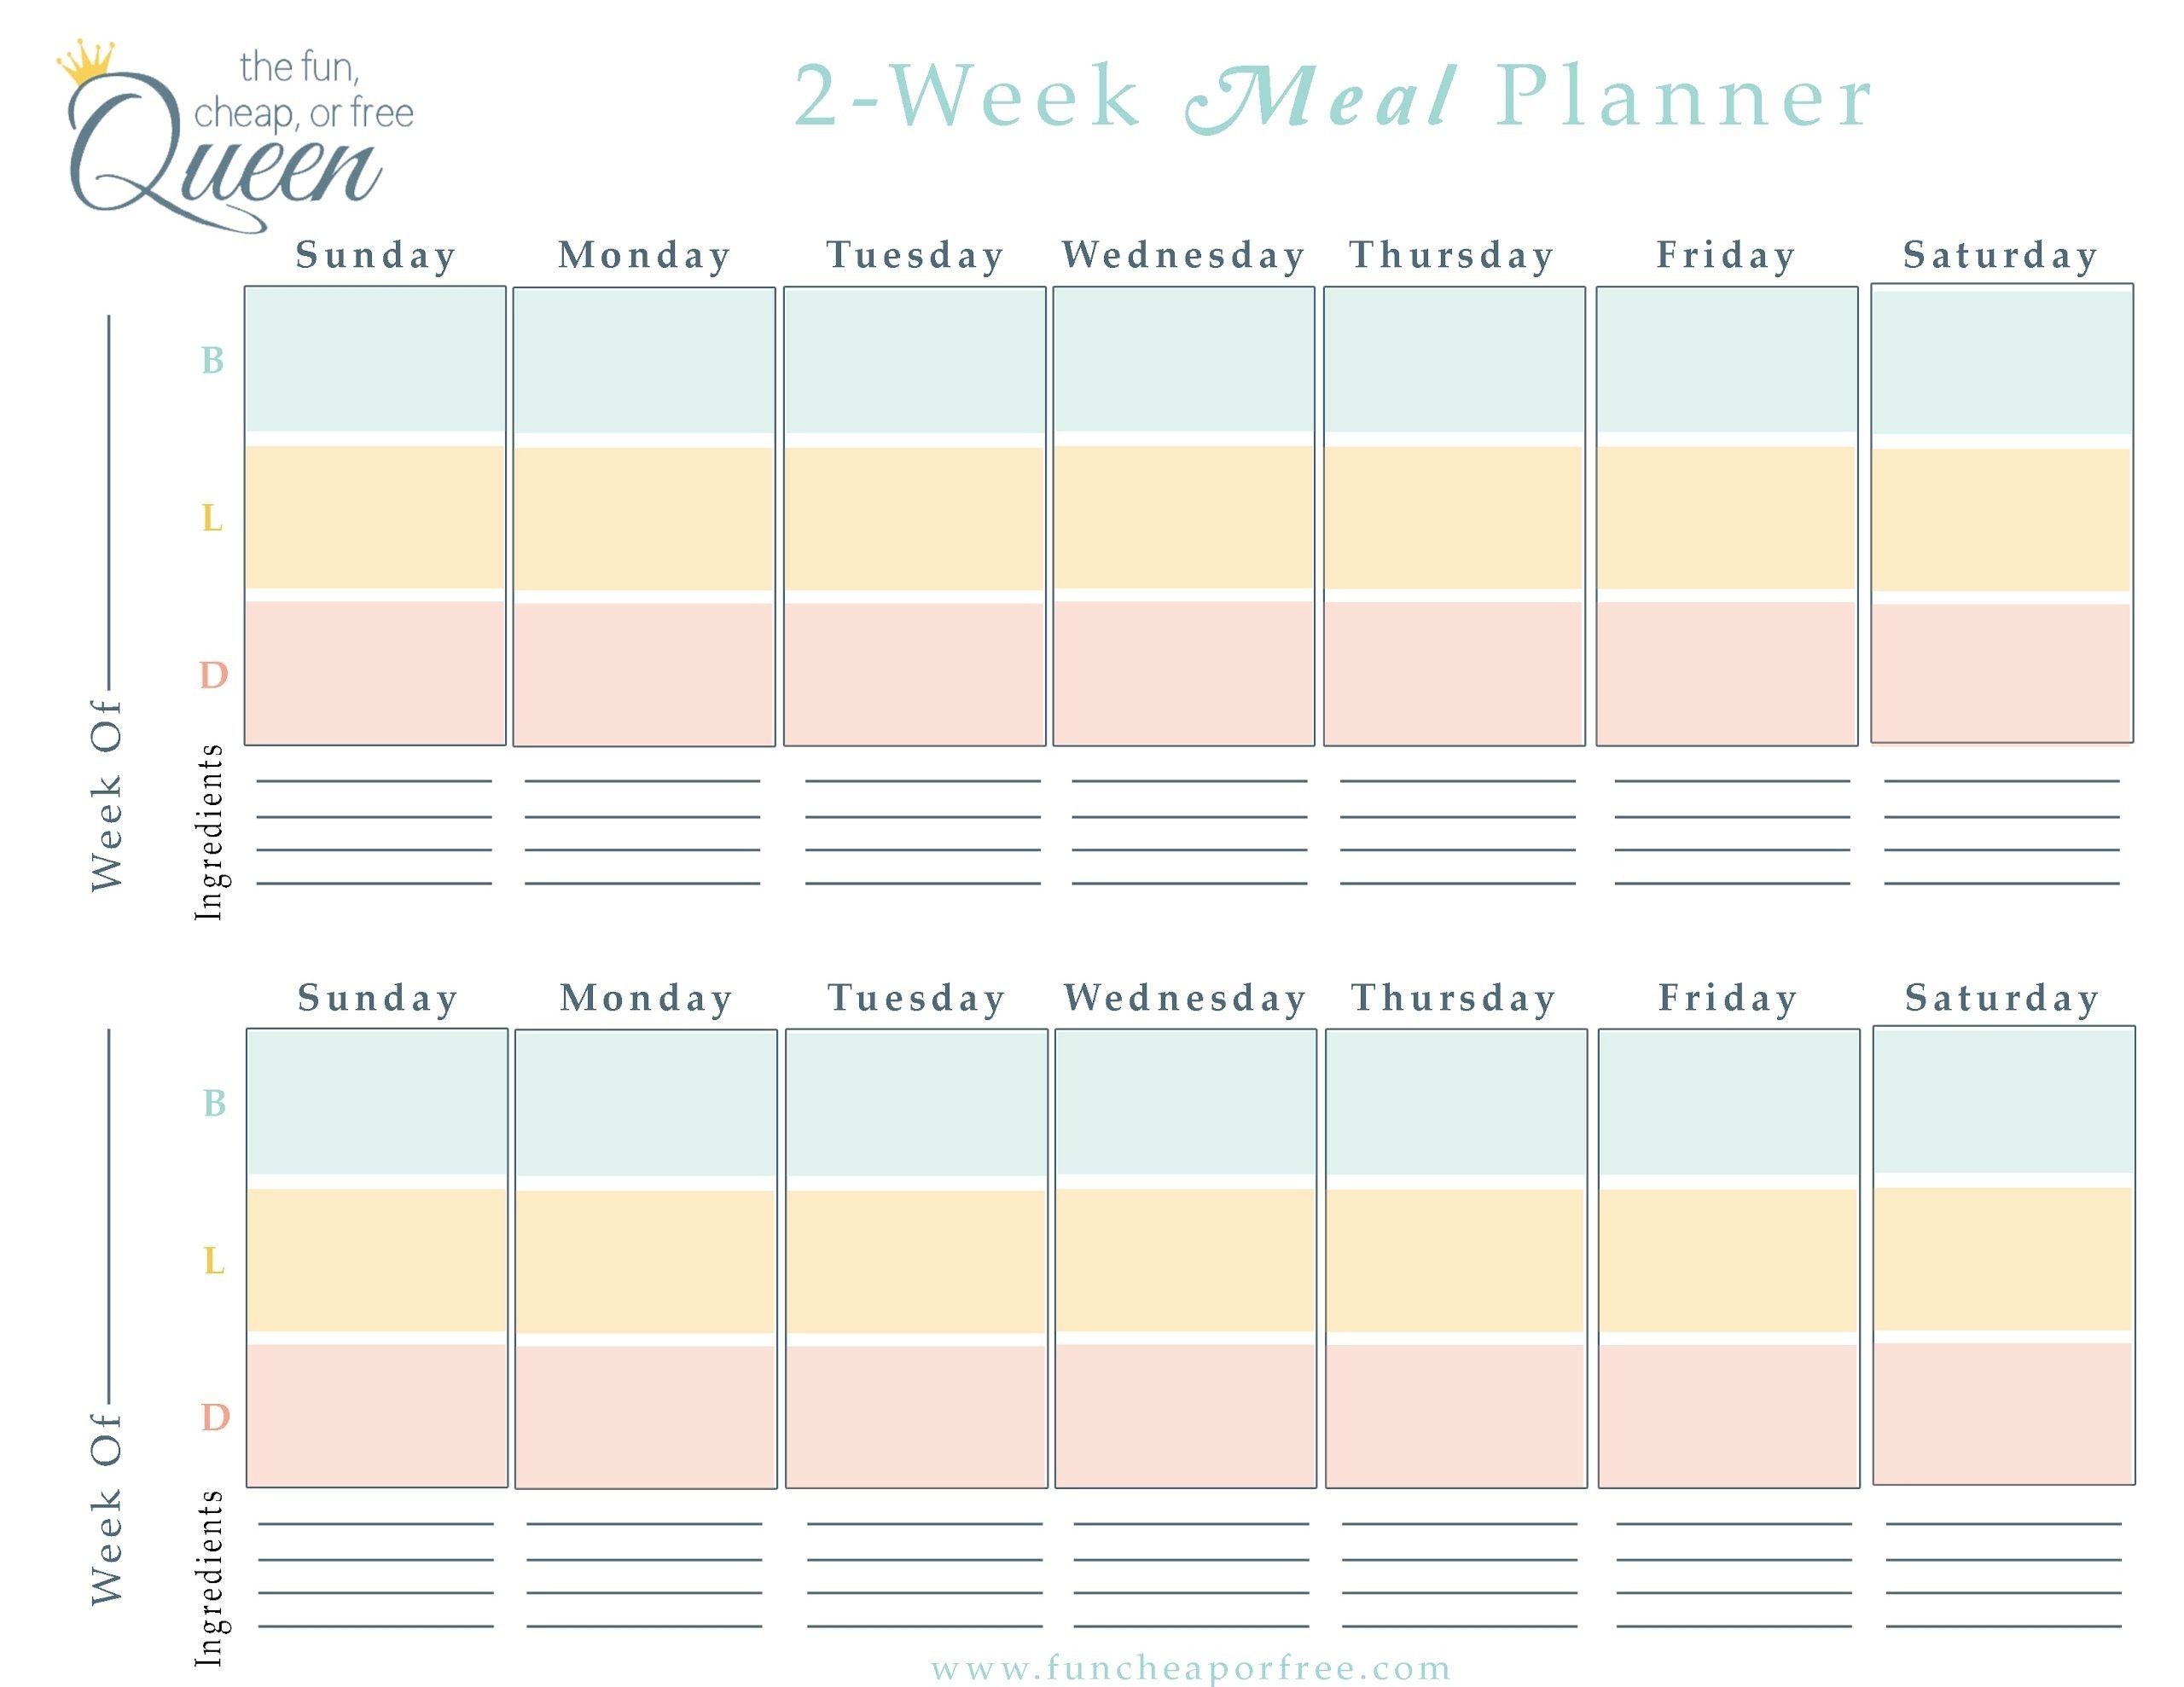 2-Week Meal Planner - Google Drive | Easy Meal Plans, Easy-2 Week Schedule Template Printable